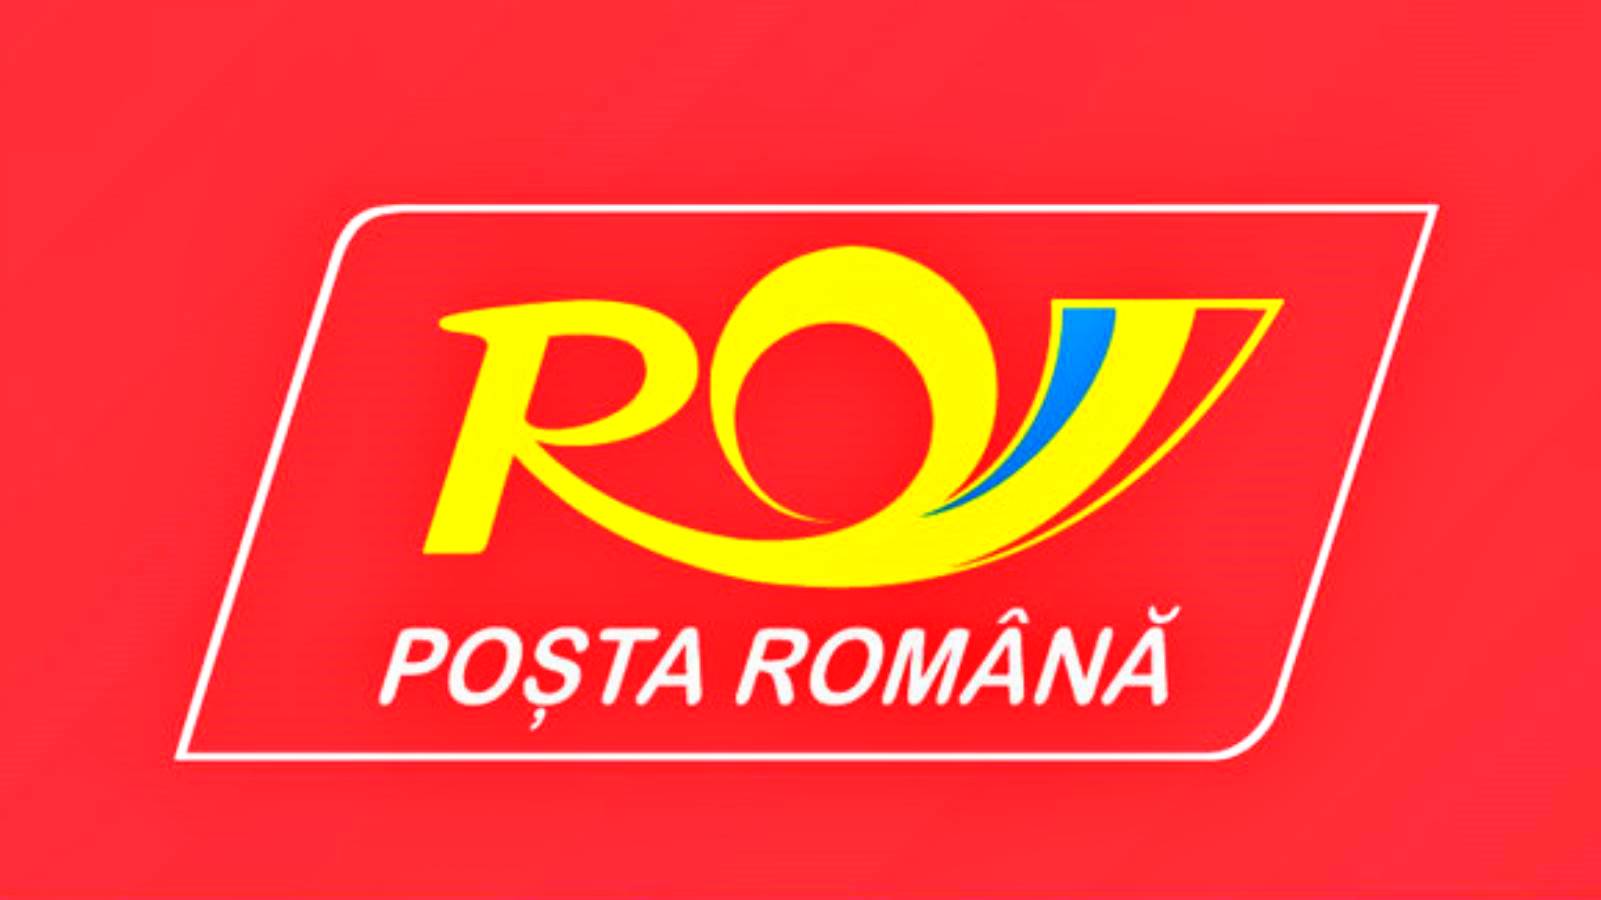 De Roemeense Post waarschuwt nu alle Roemenen